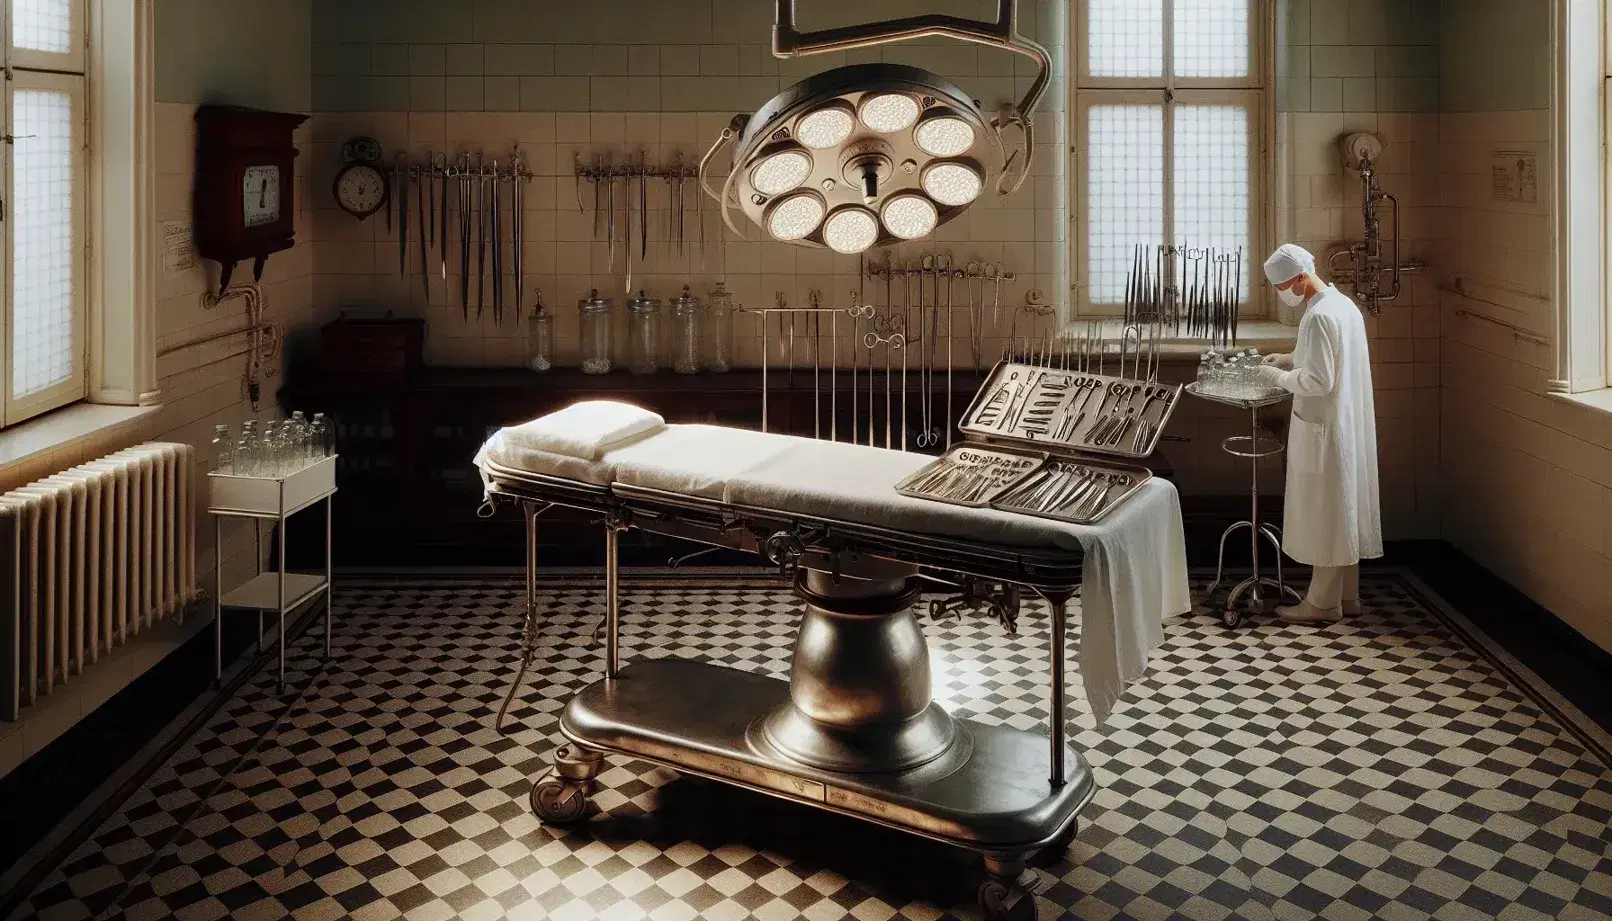 Sala de operaciones antigua con mesa metálica, lámpara quirúrgica, instrumentos quirúrgicos y médico lavándose las manos en un ambiente estéril y sereno.